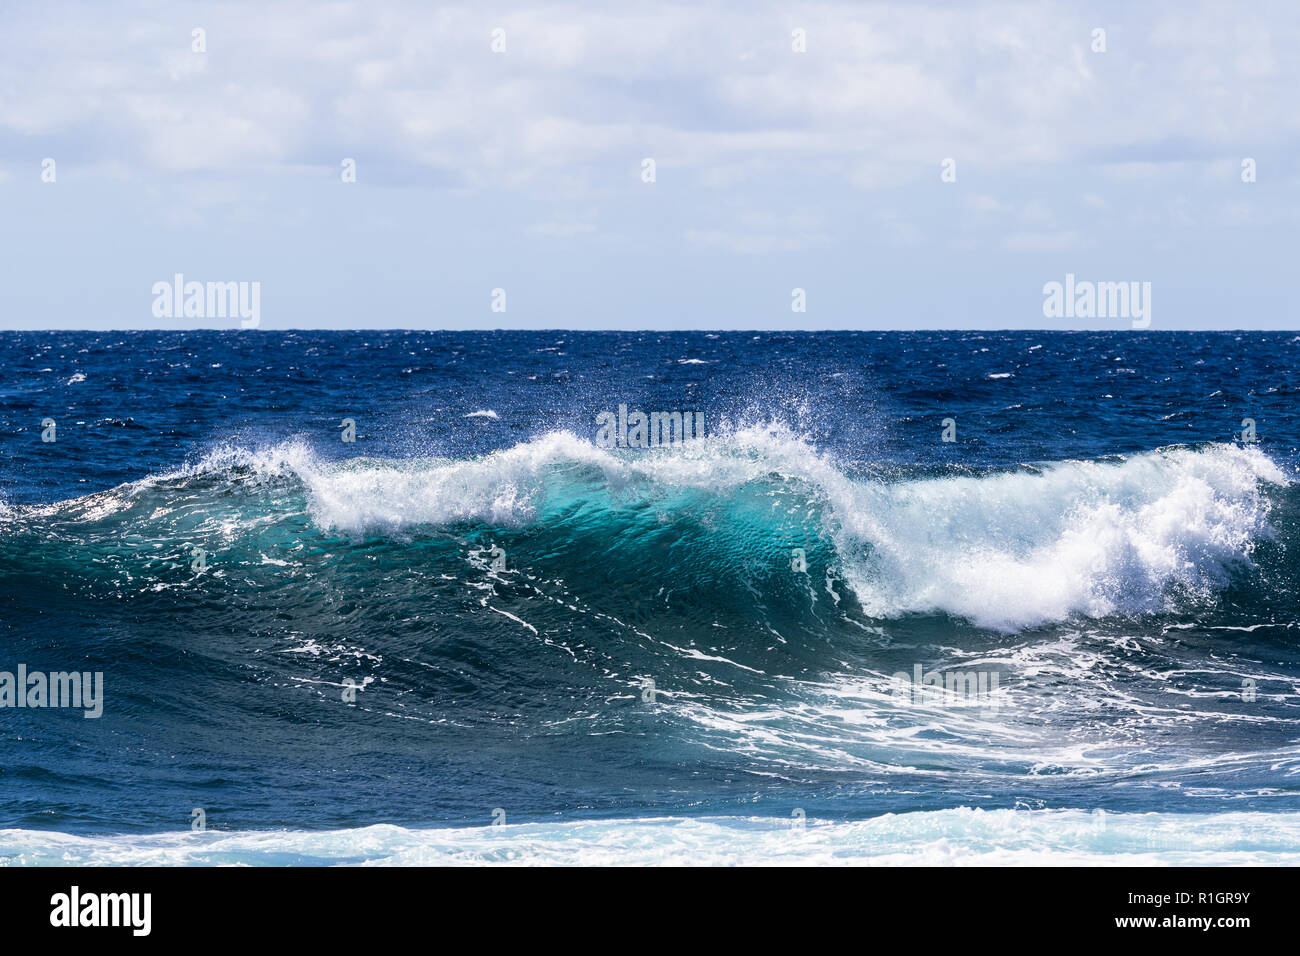 Rottura d'onda vicino a riva sul punto sud, su la Big Island delle Hawaii. Gomma espansa sulla parte superiore dell'onda chiaro blu-verde acqua; oceano Pacifico in background. Foto Stock